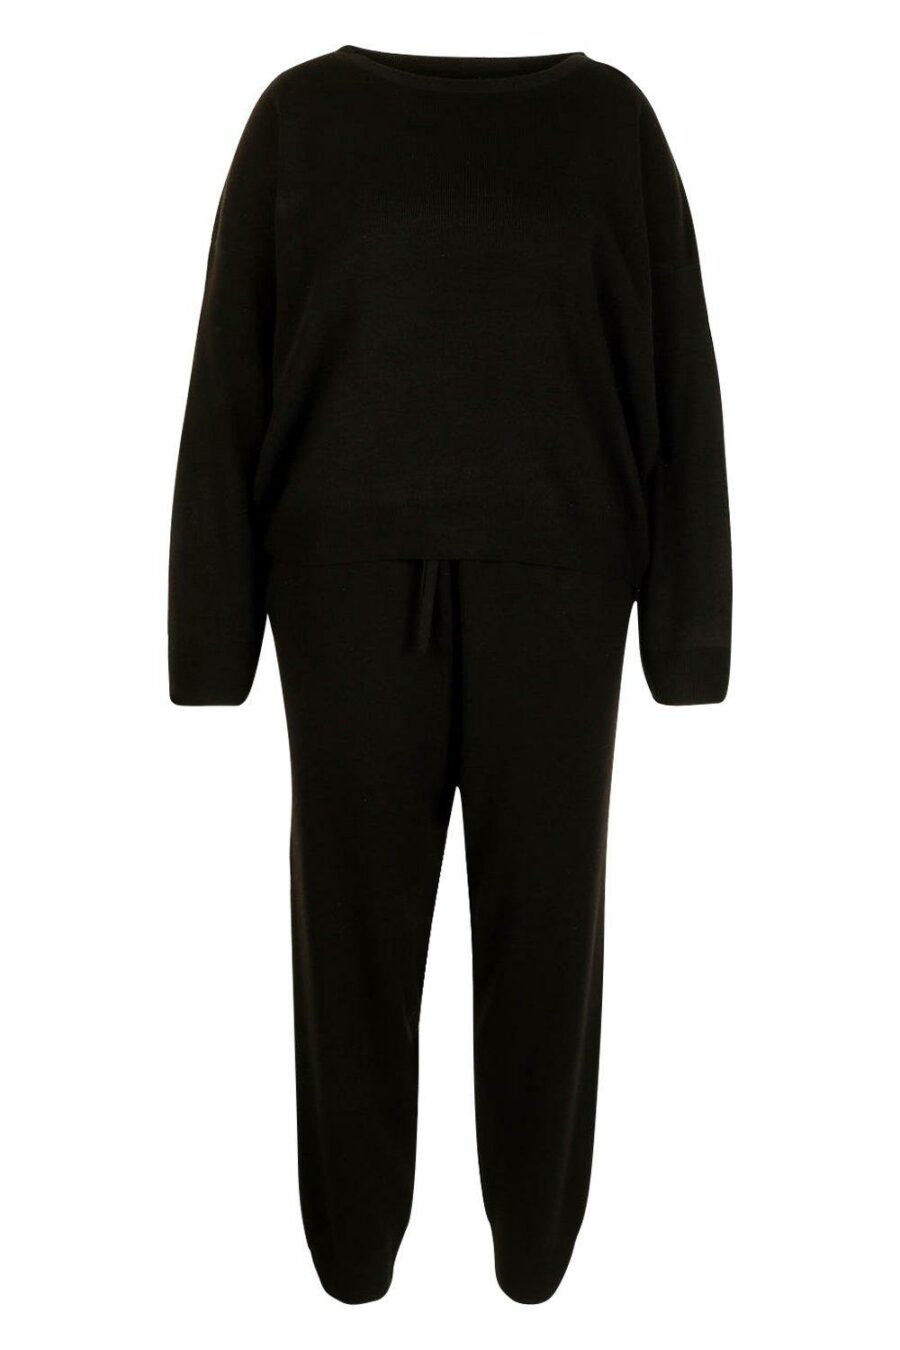 Boohoo-czarny-dzianinowy-sweter-plus-size-48-50